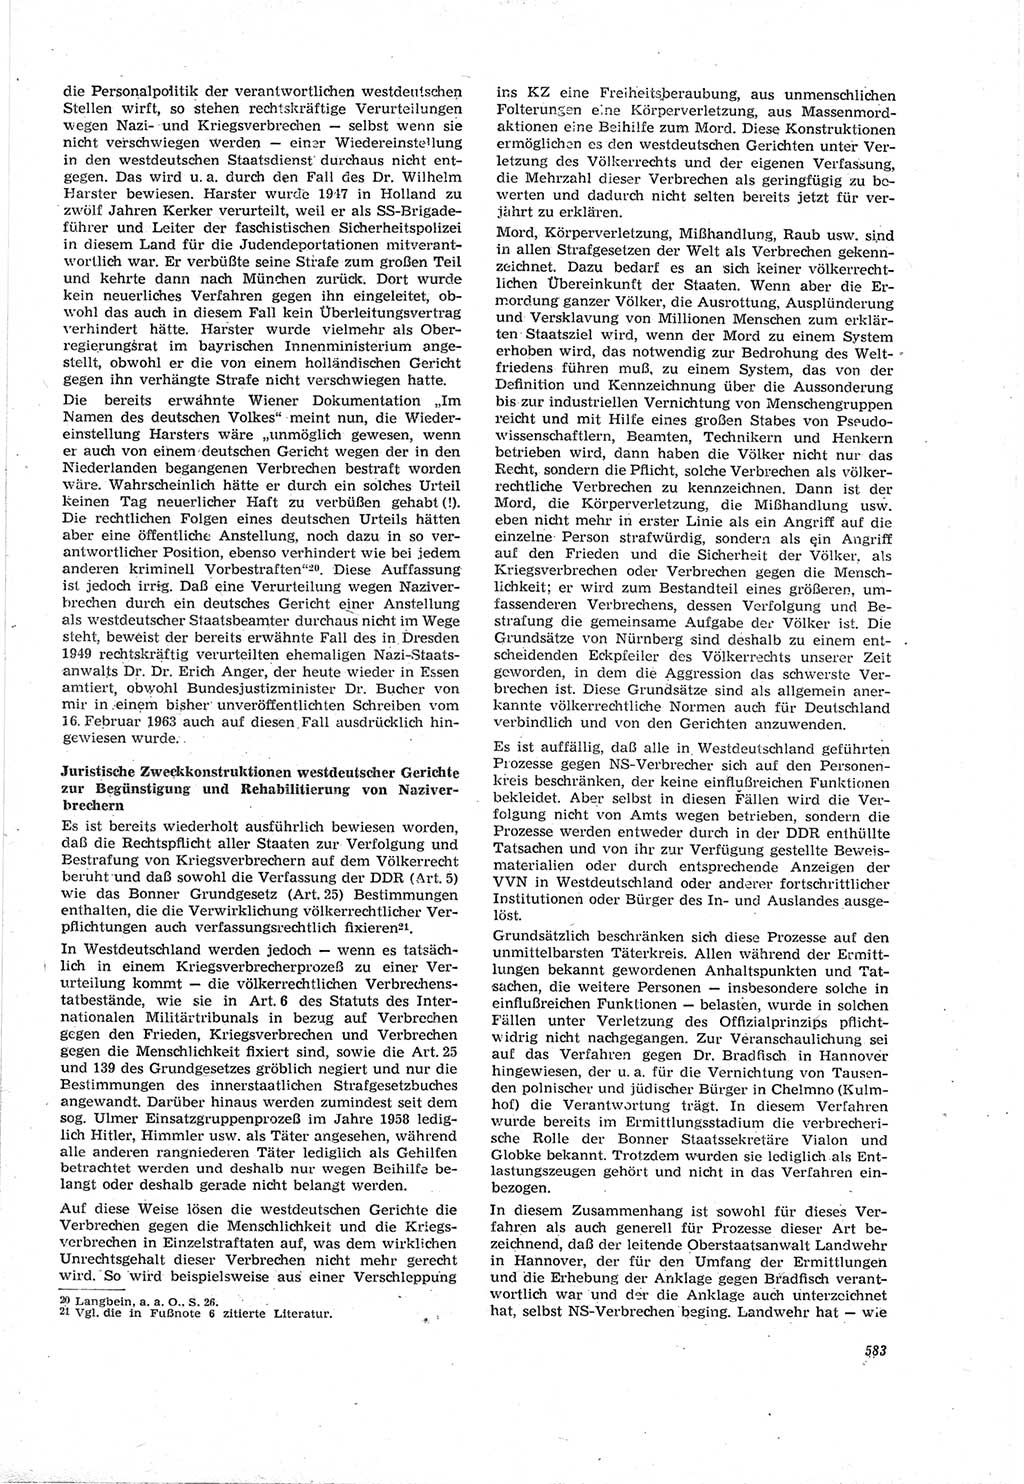 Neue Justiz (NJ), Zeitschrift für Recht und Rechtswissenschaft [Deutsche Demokratische Republik (DDR)], 18. Jahrgang 1964, Seite 583 (NJ DDR 1964, S. 583)